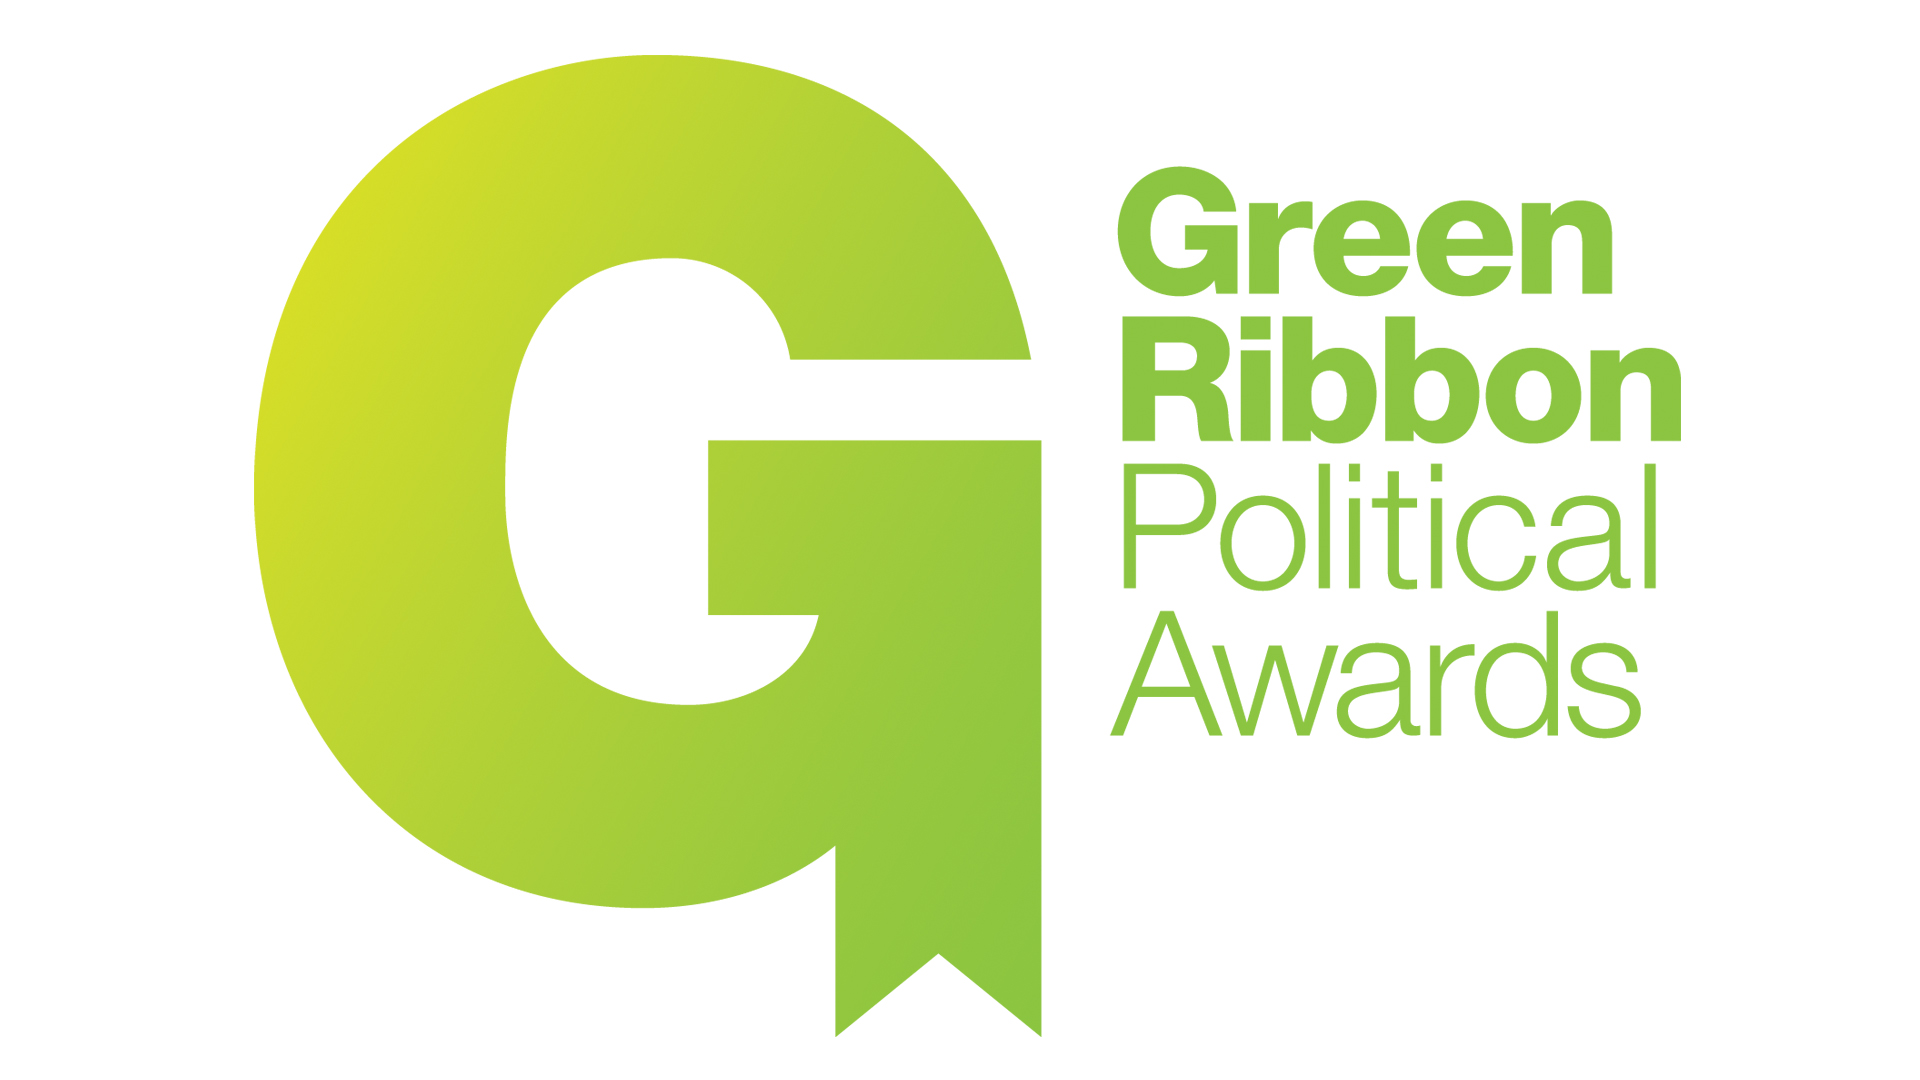 Green Ribbon Political Awards